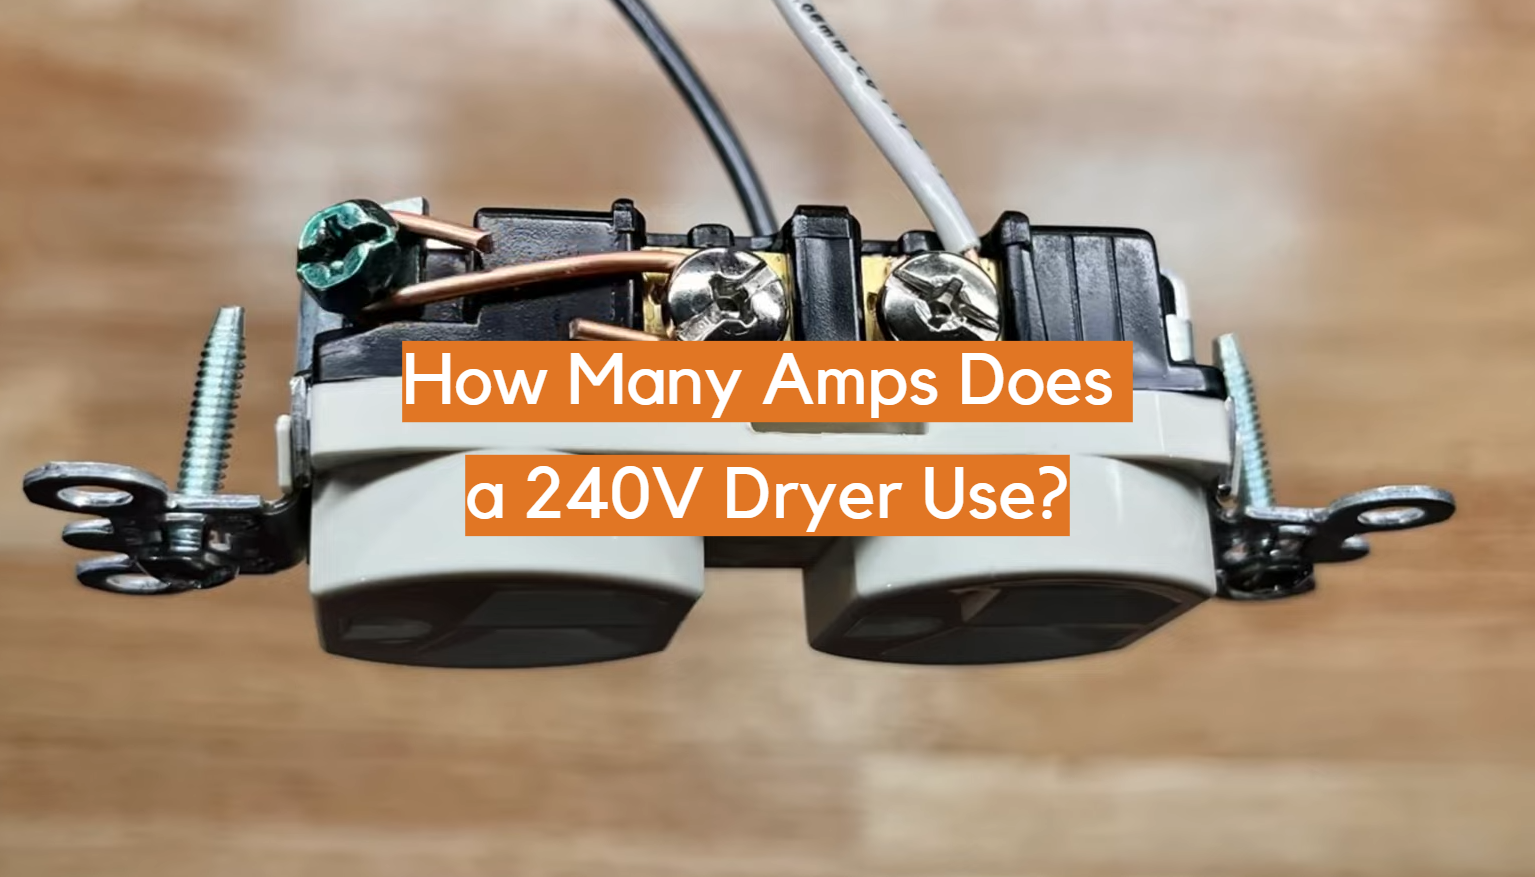 ¿Cuántos amperios utiliza una secadora de 240 V?